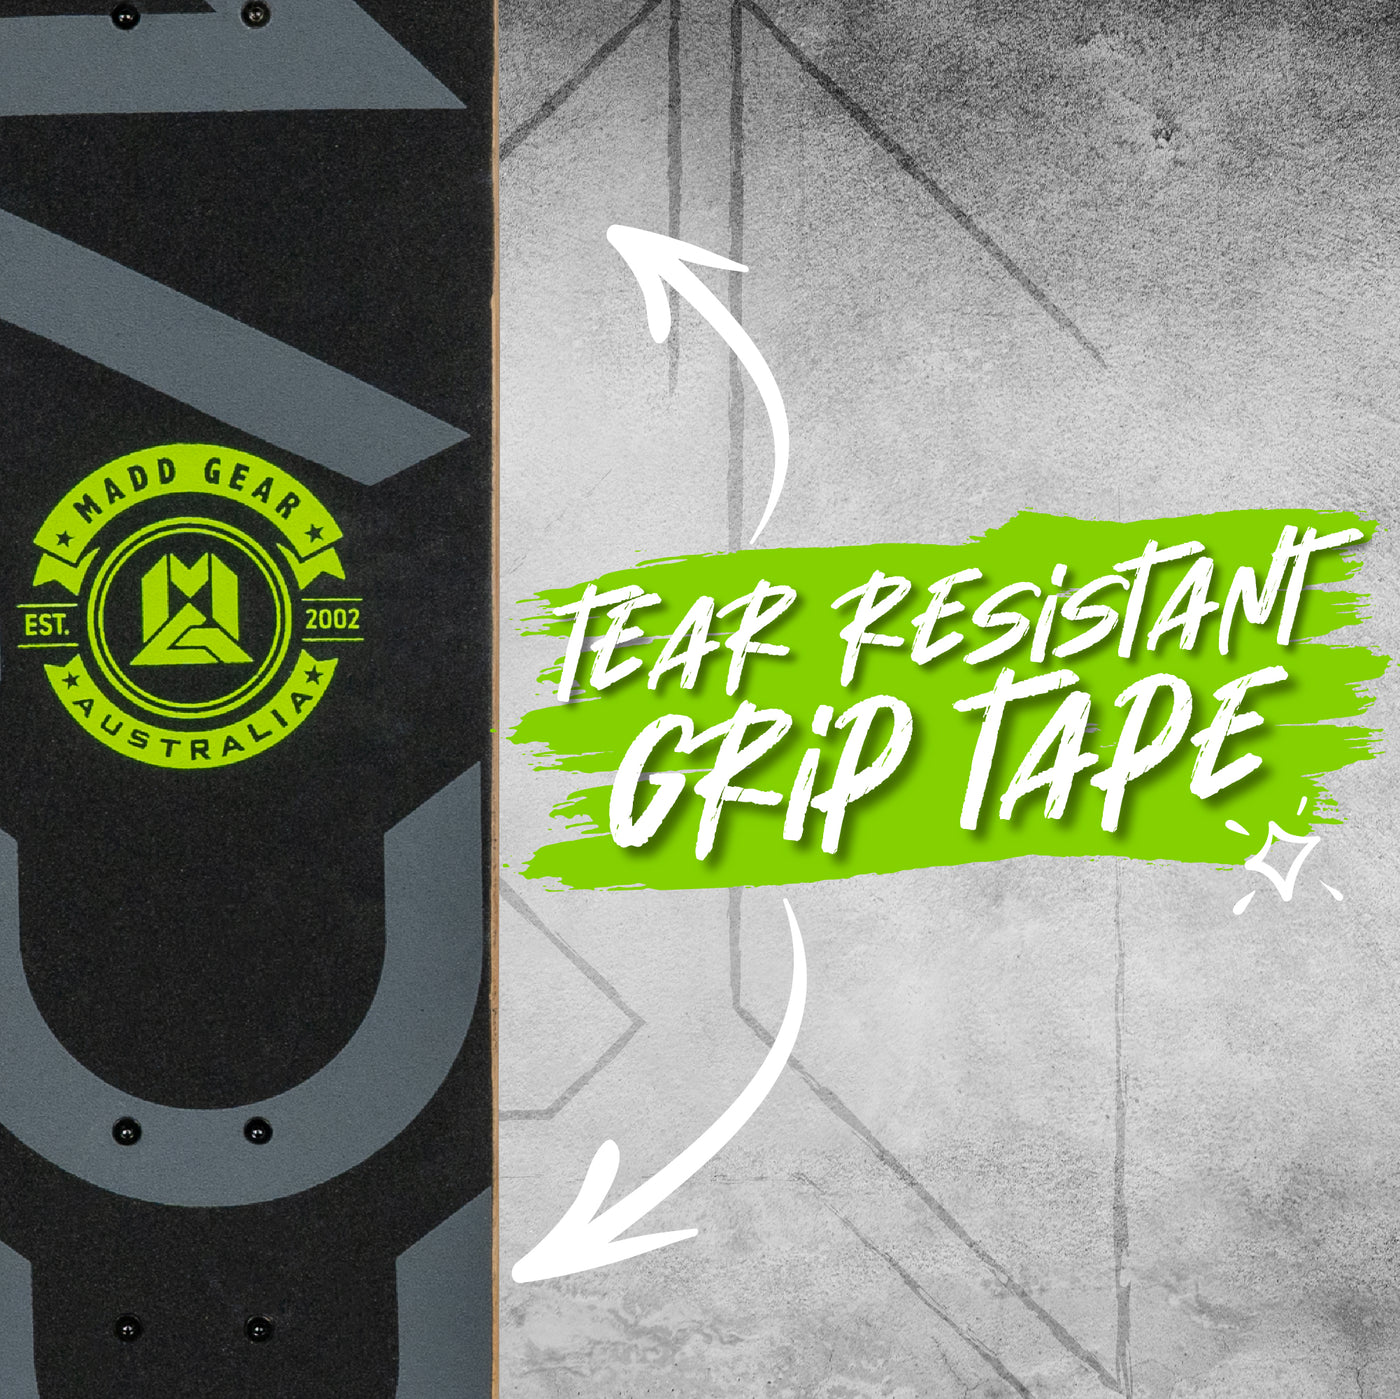 Madd Gear Skateboard Grip Tape Beginner Complete Board